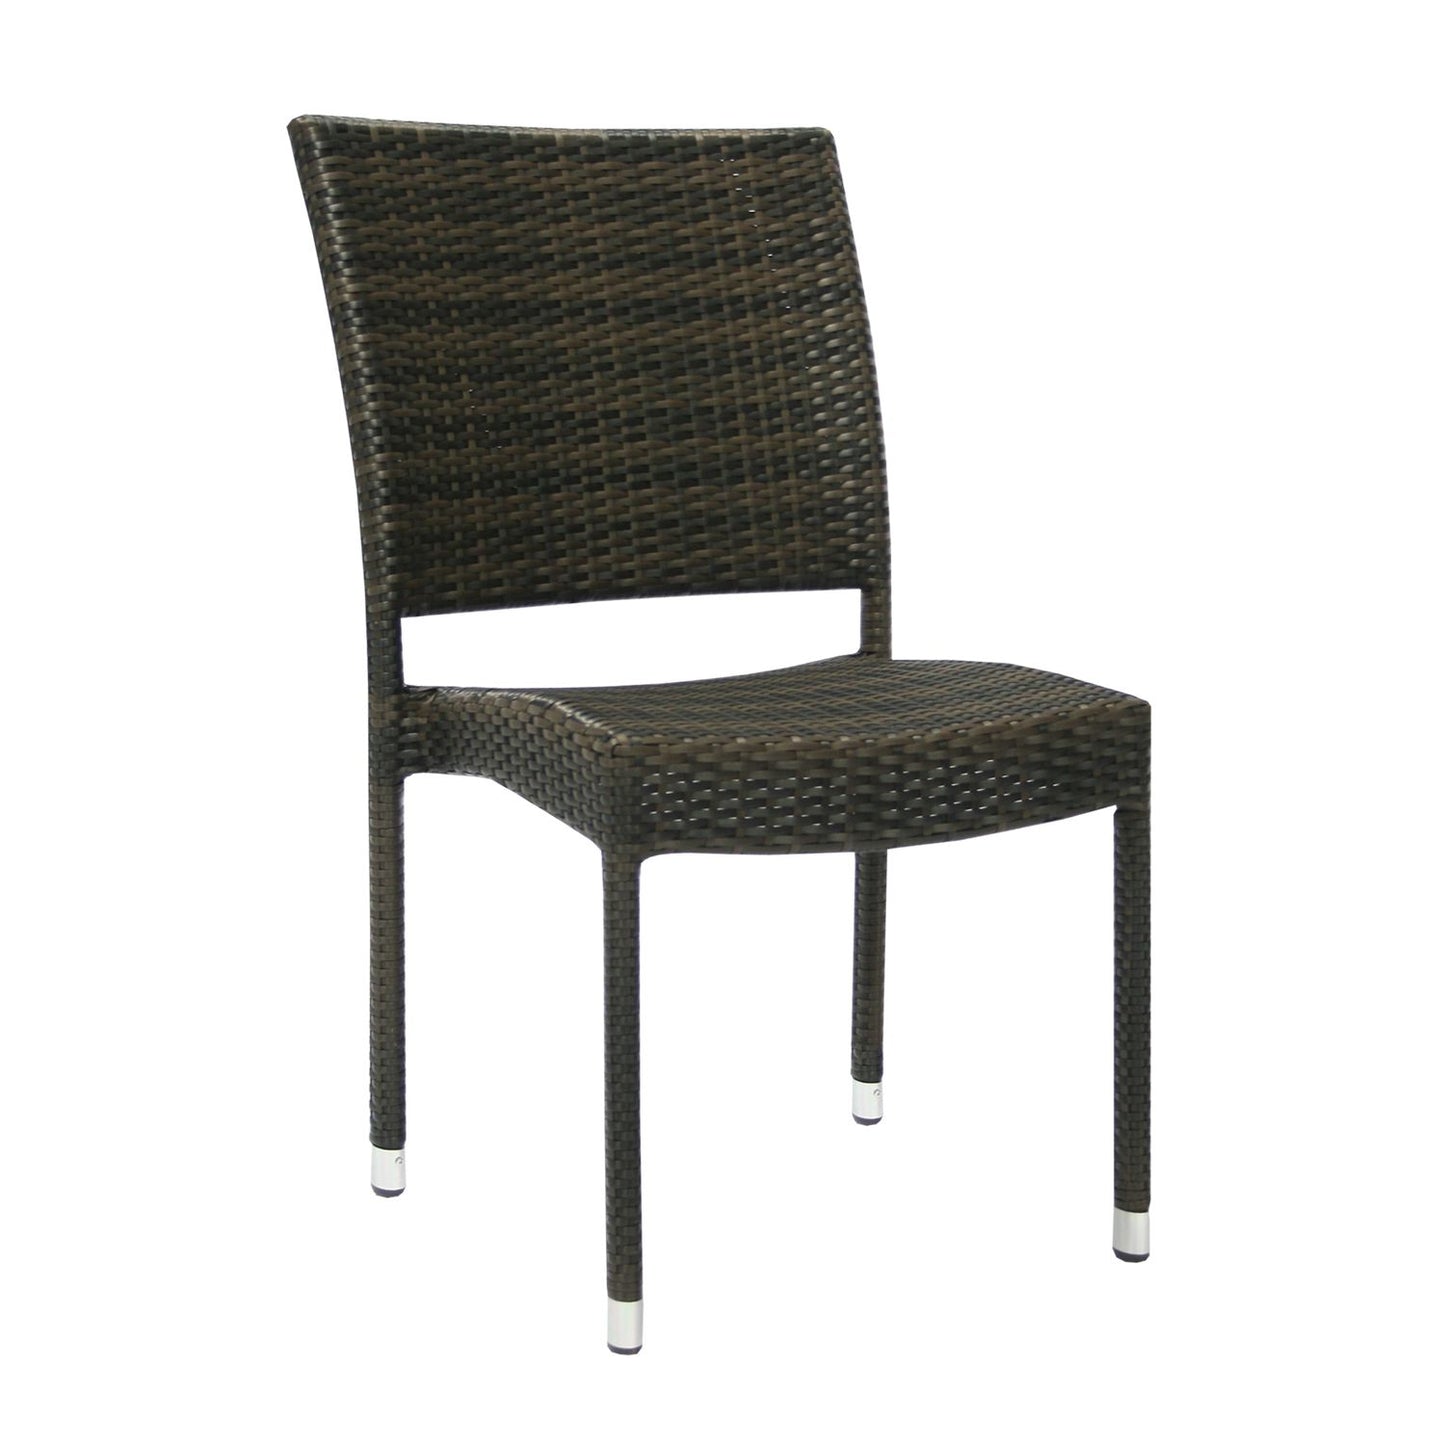 Lauko kėdė, 49x62x91cm, rudos spalvos